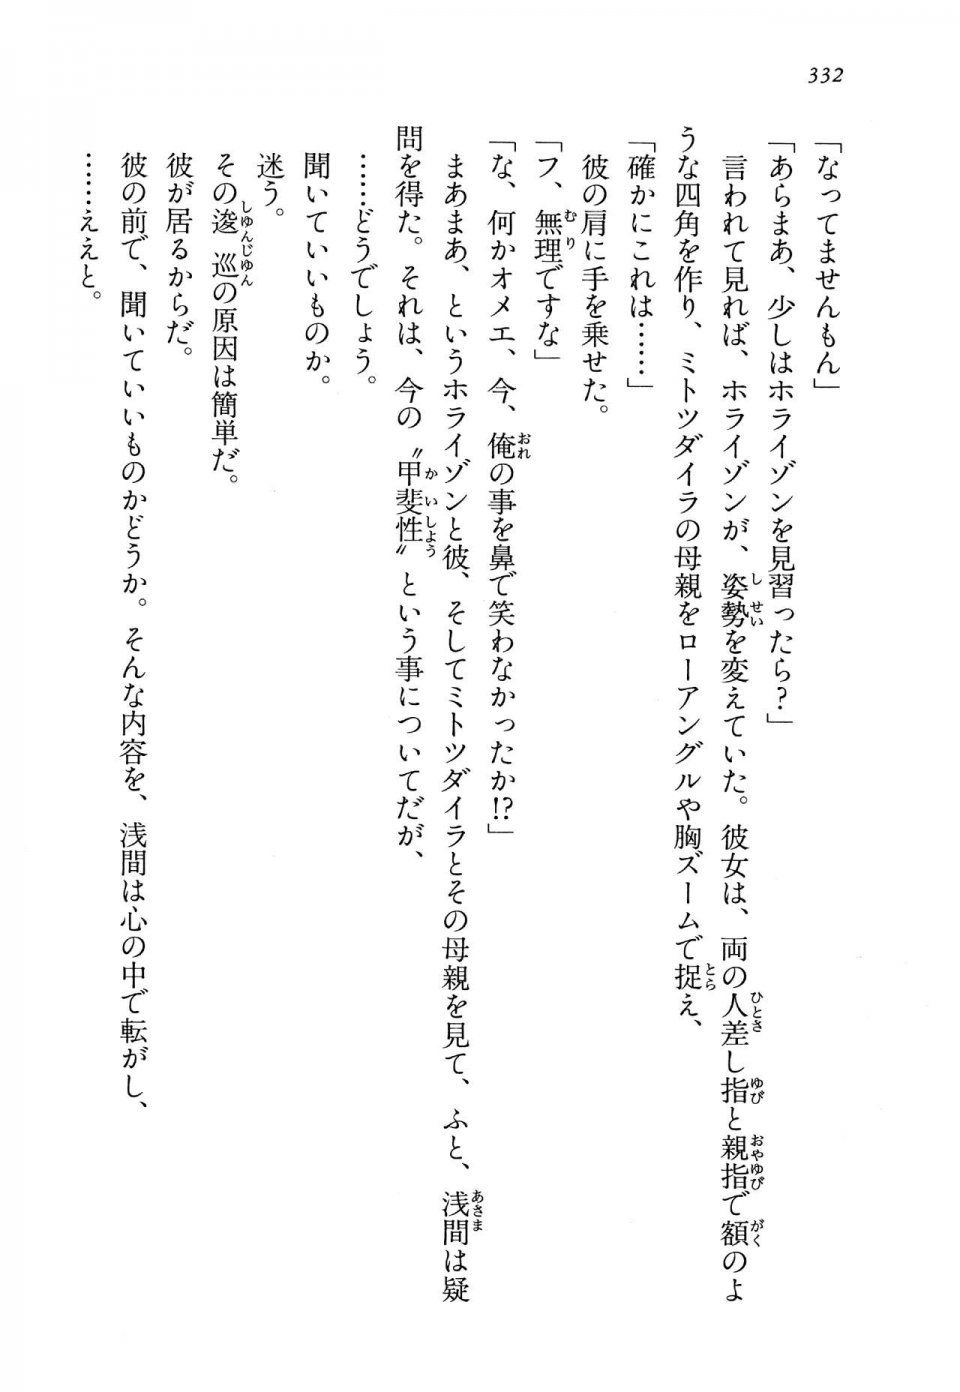 Kyoukai Senjou no Horizon LN Vol 13(6A) - Photo #332